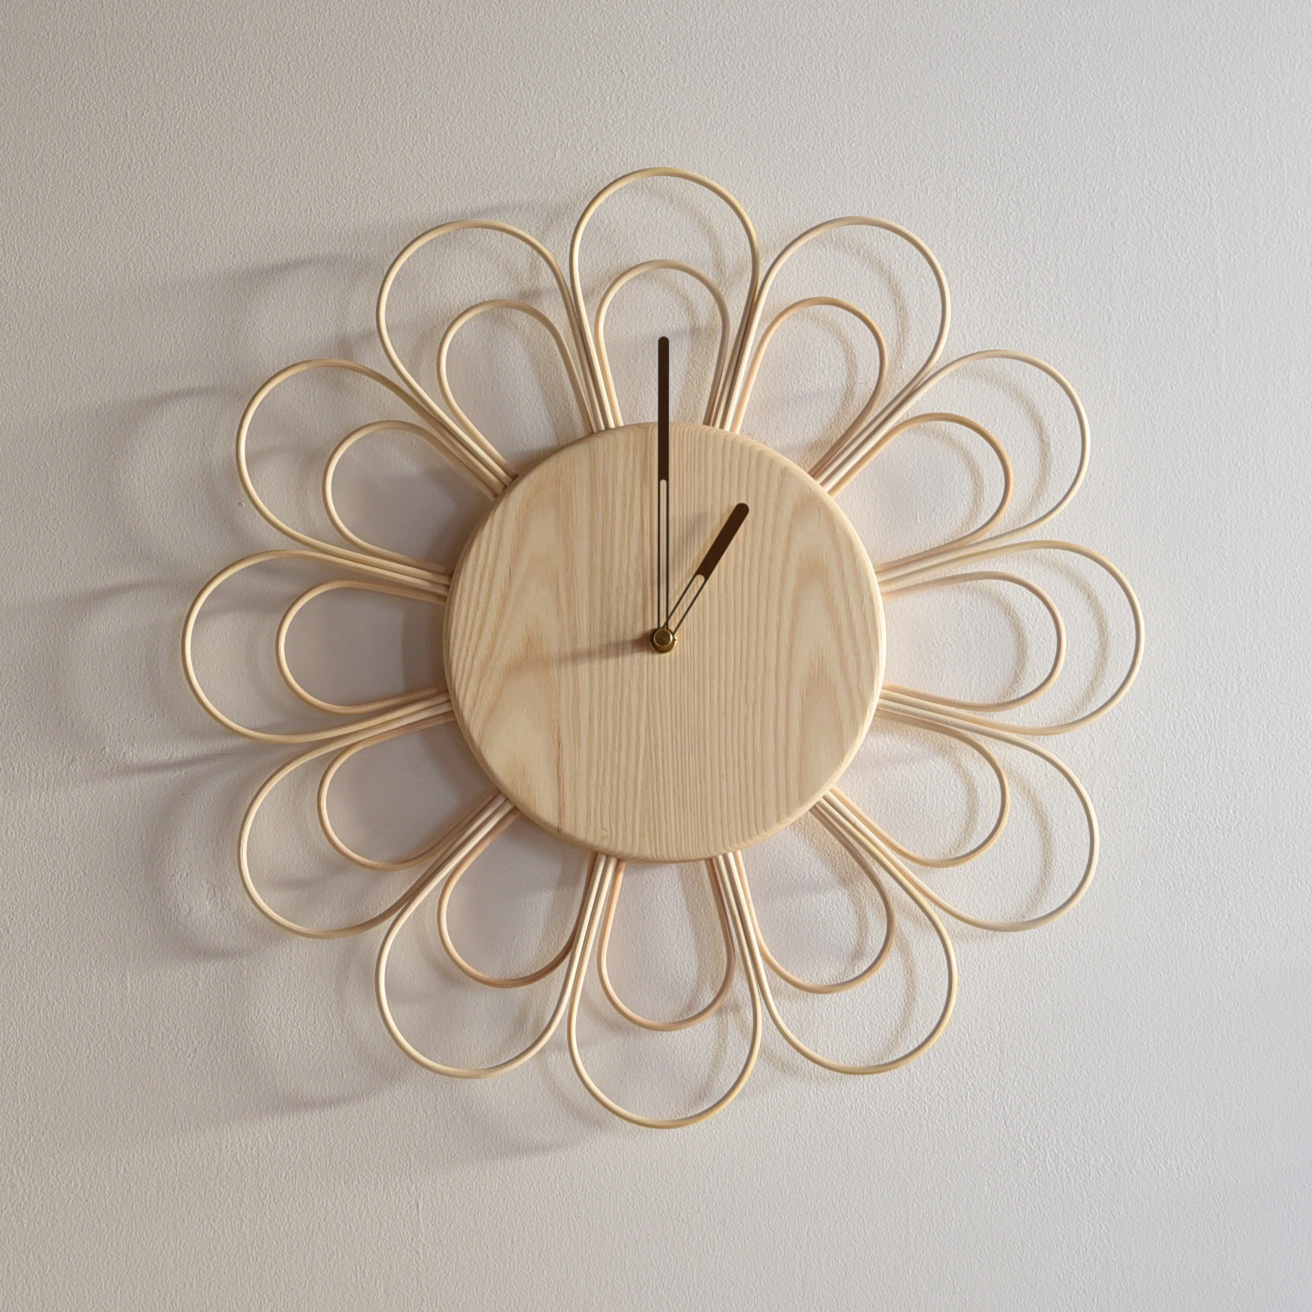 ラタンと木のナチュラルな籐とトネリコの時計ラタンのミラーなどと壁に配置してもいいですね。